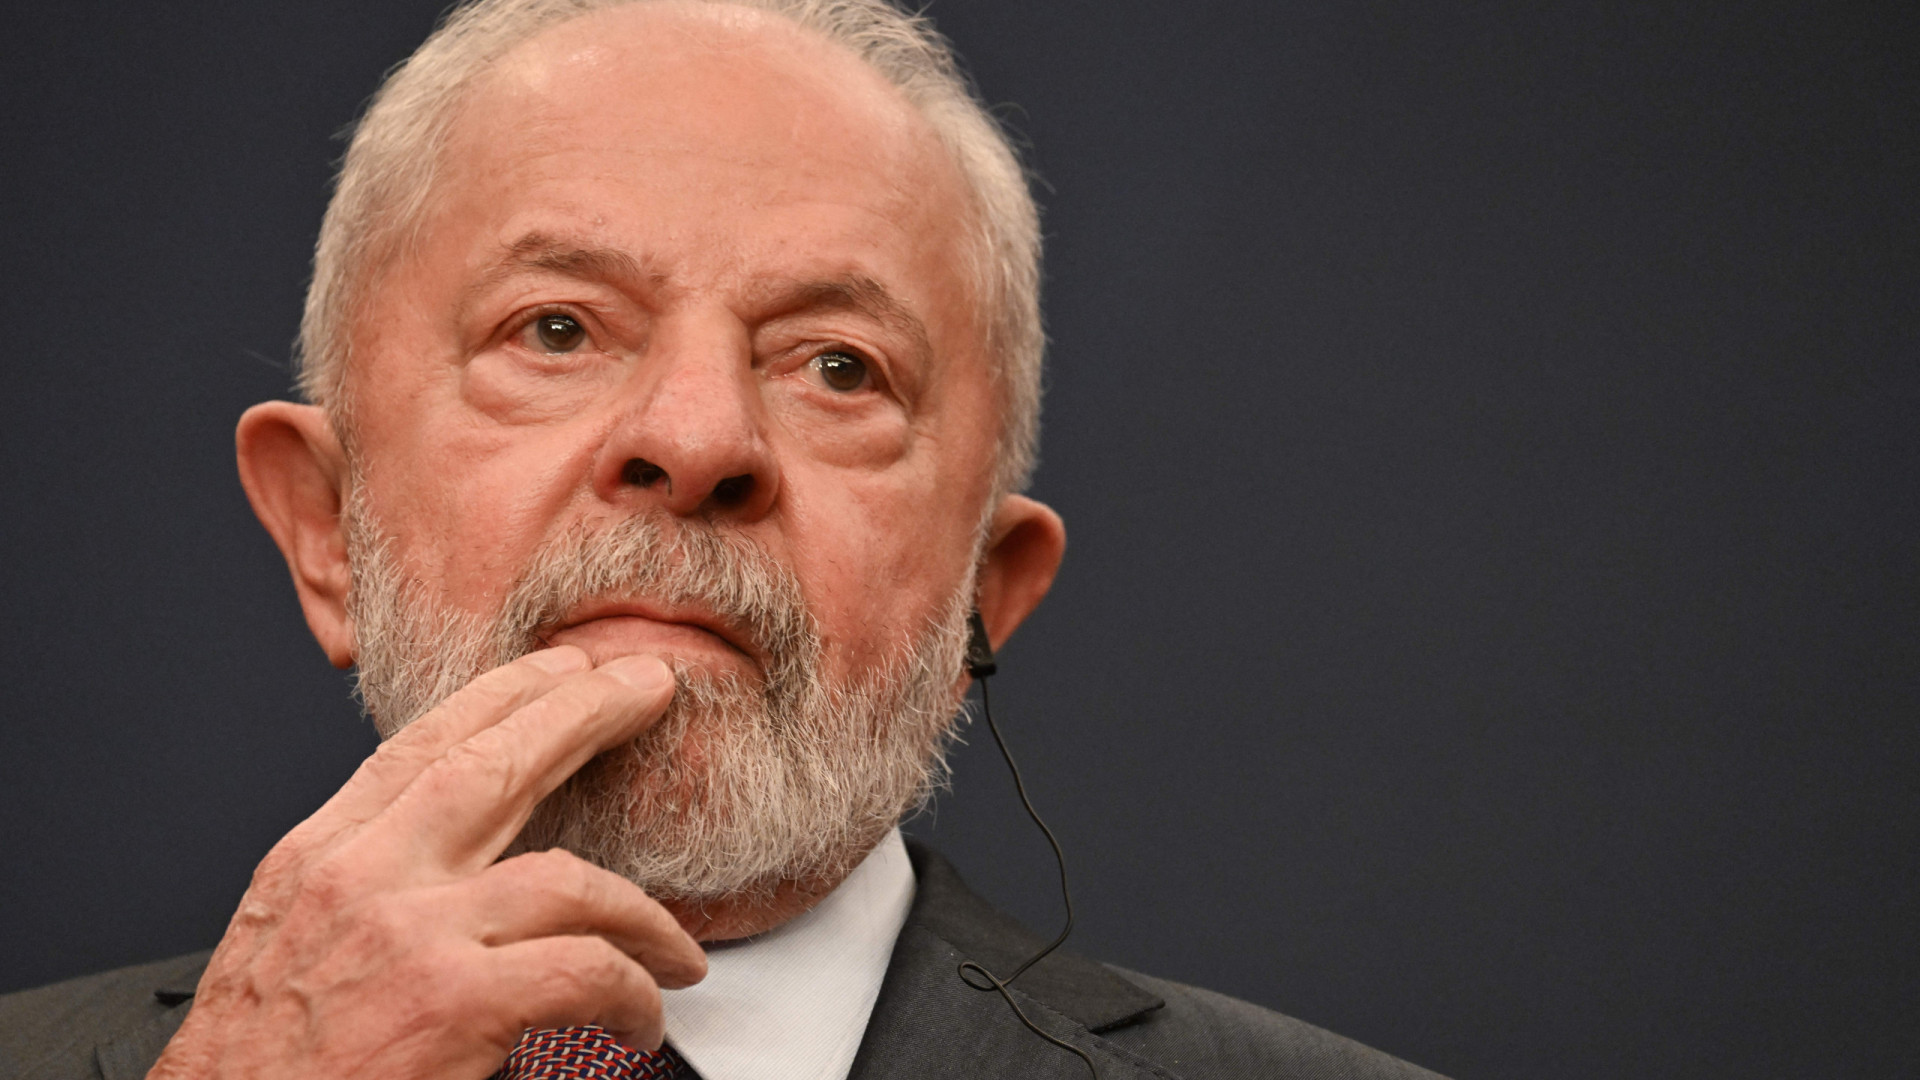 PP racha e põe em risco projetos de Lula, mesmo levando Caixa e Esportes